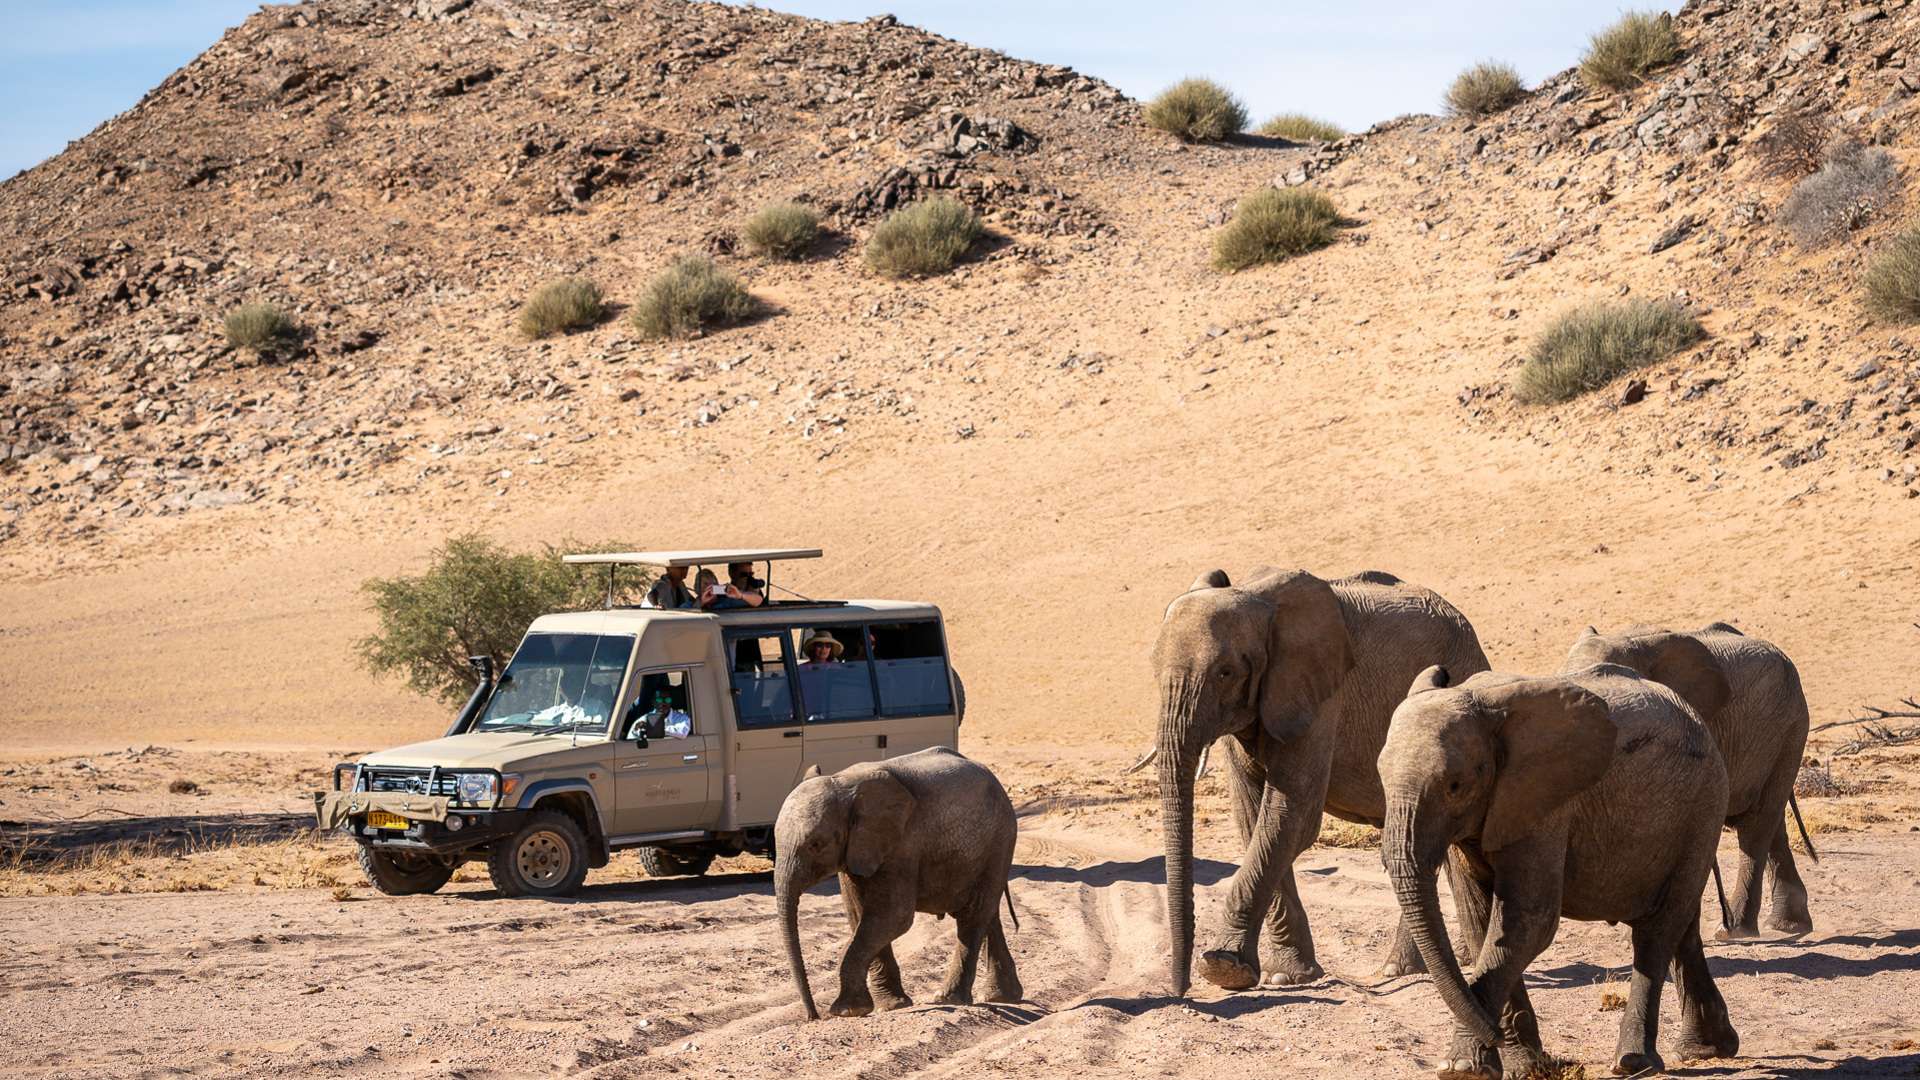 elefanti del deserto vicino a una jeep a twyvelfontein